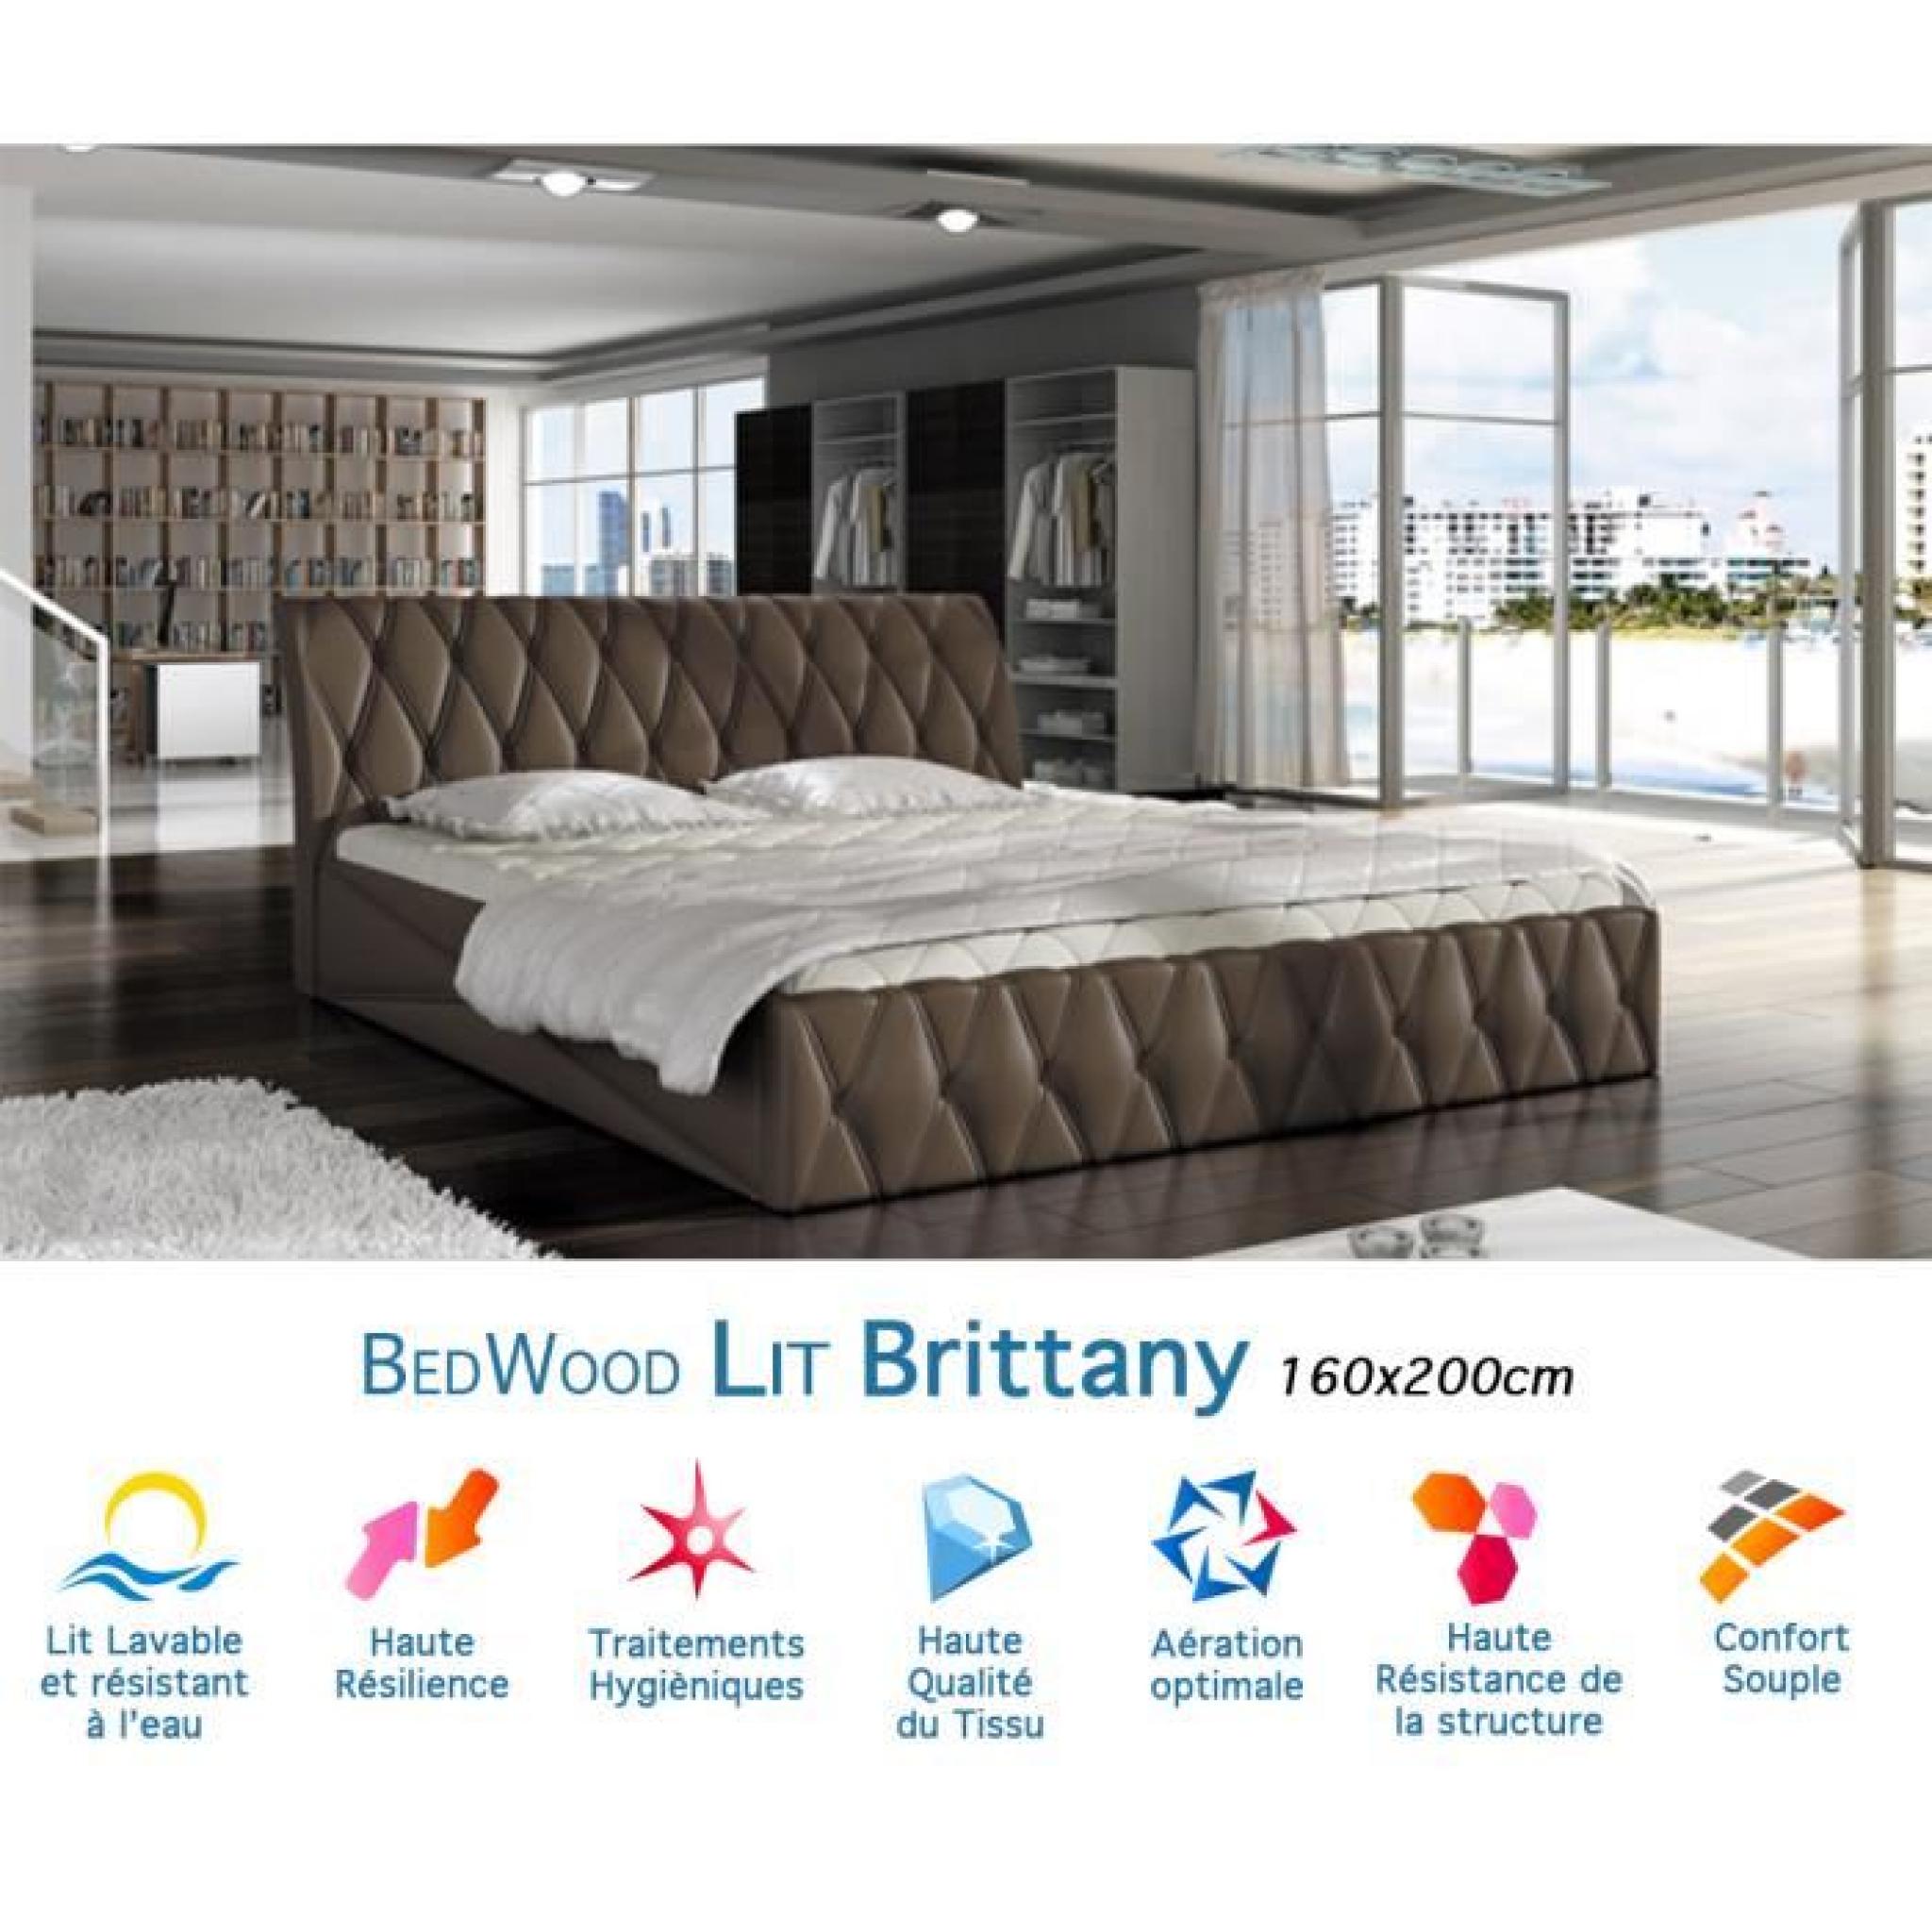 Lit Design Bedwood Brittany 160x200cm